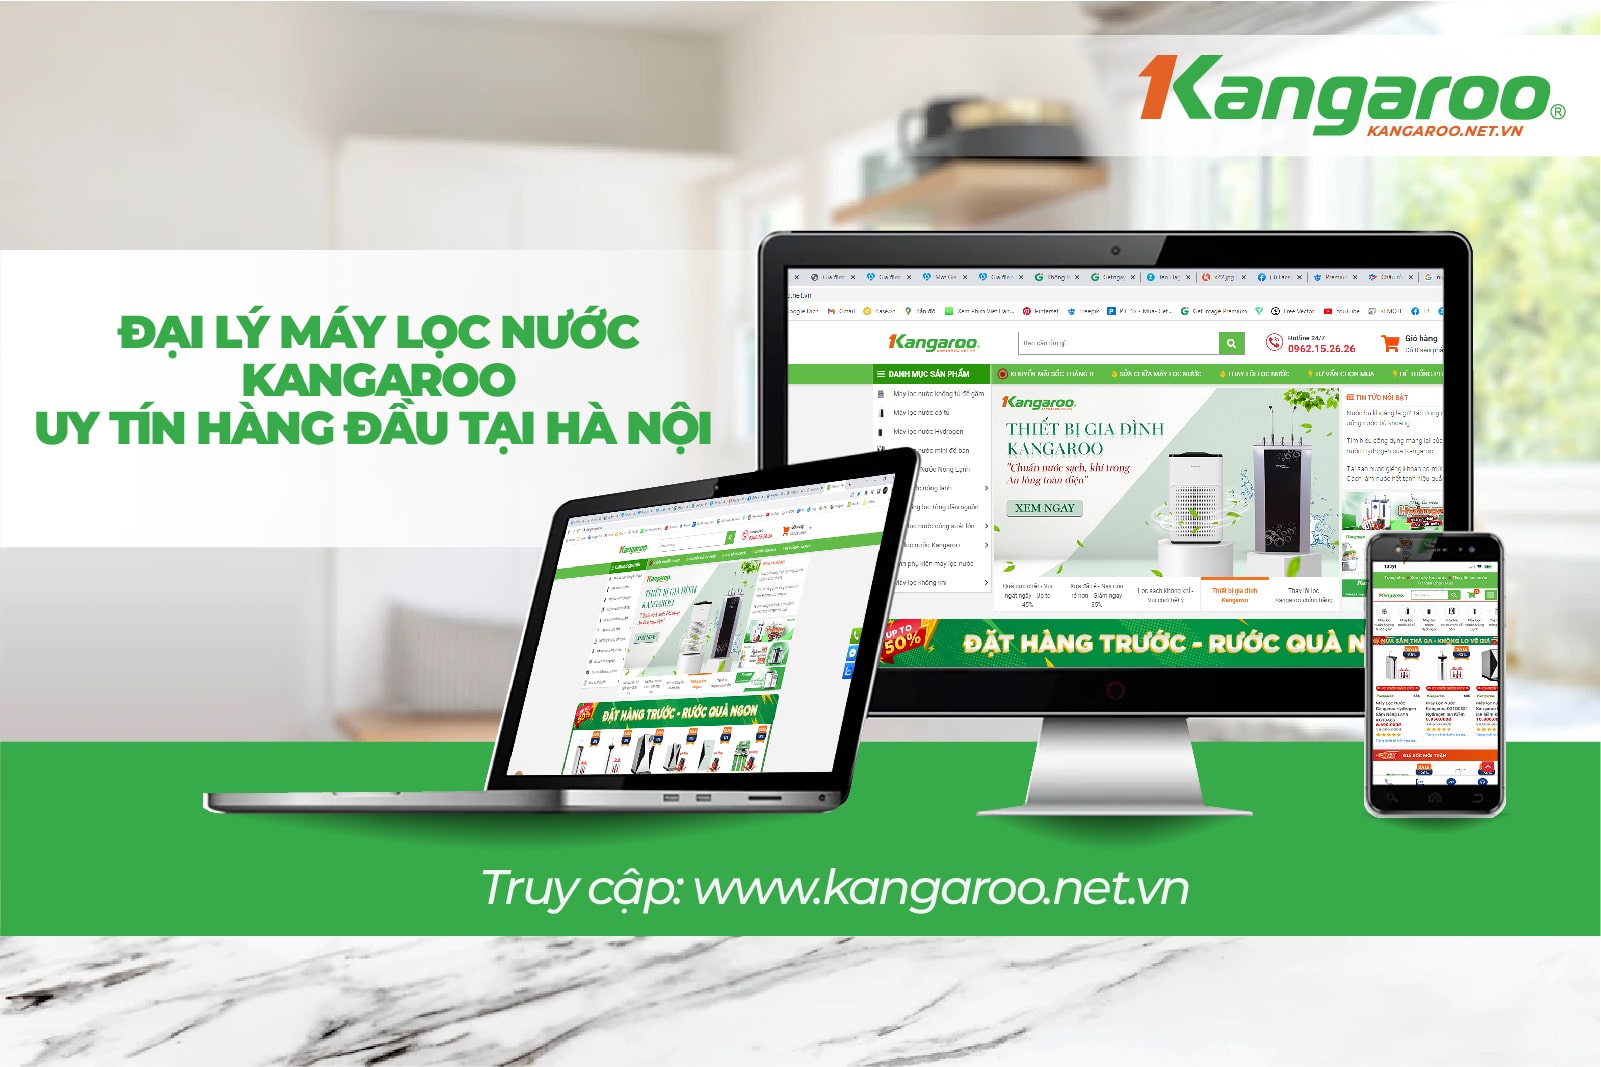 Kangaroo.net.vn là địa chỉ được người dùng tin cậy chọn mua KG100ES1 